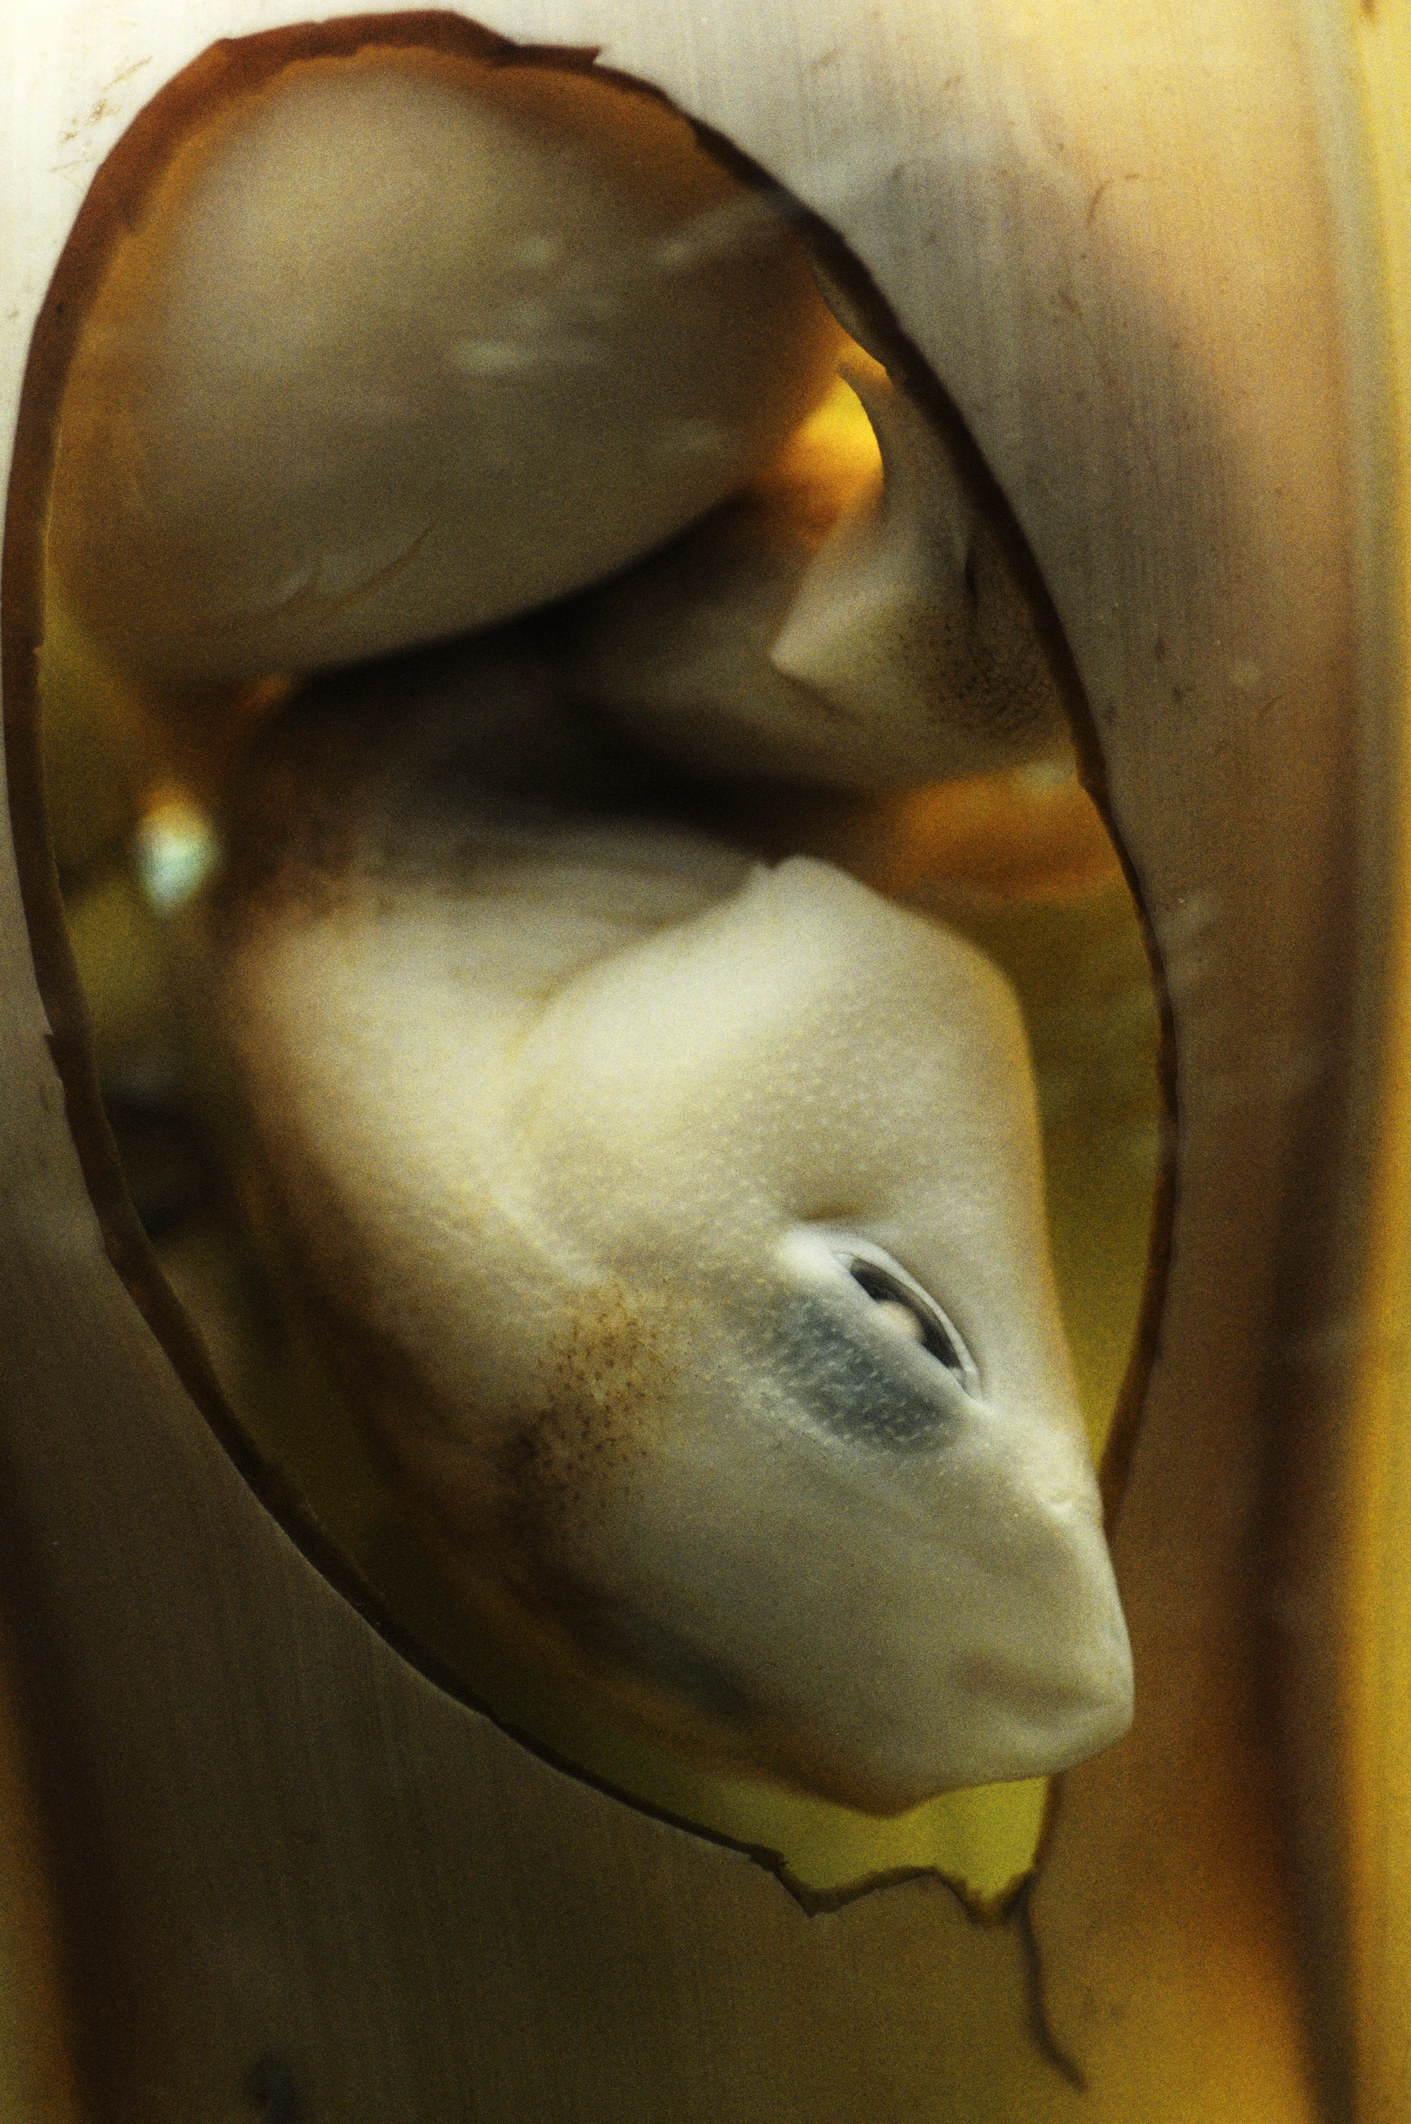 A sand shark embryo